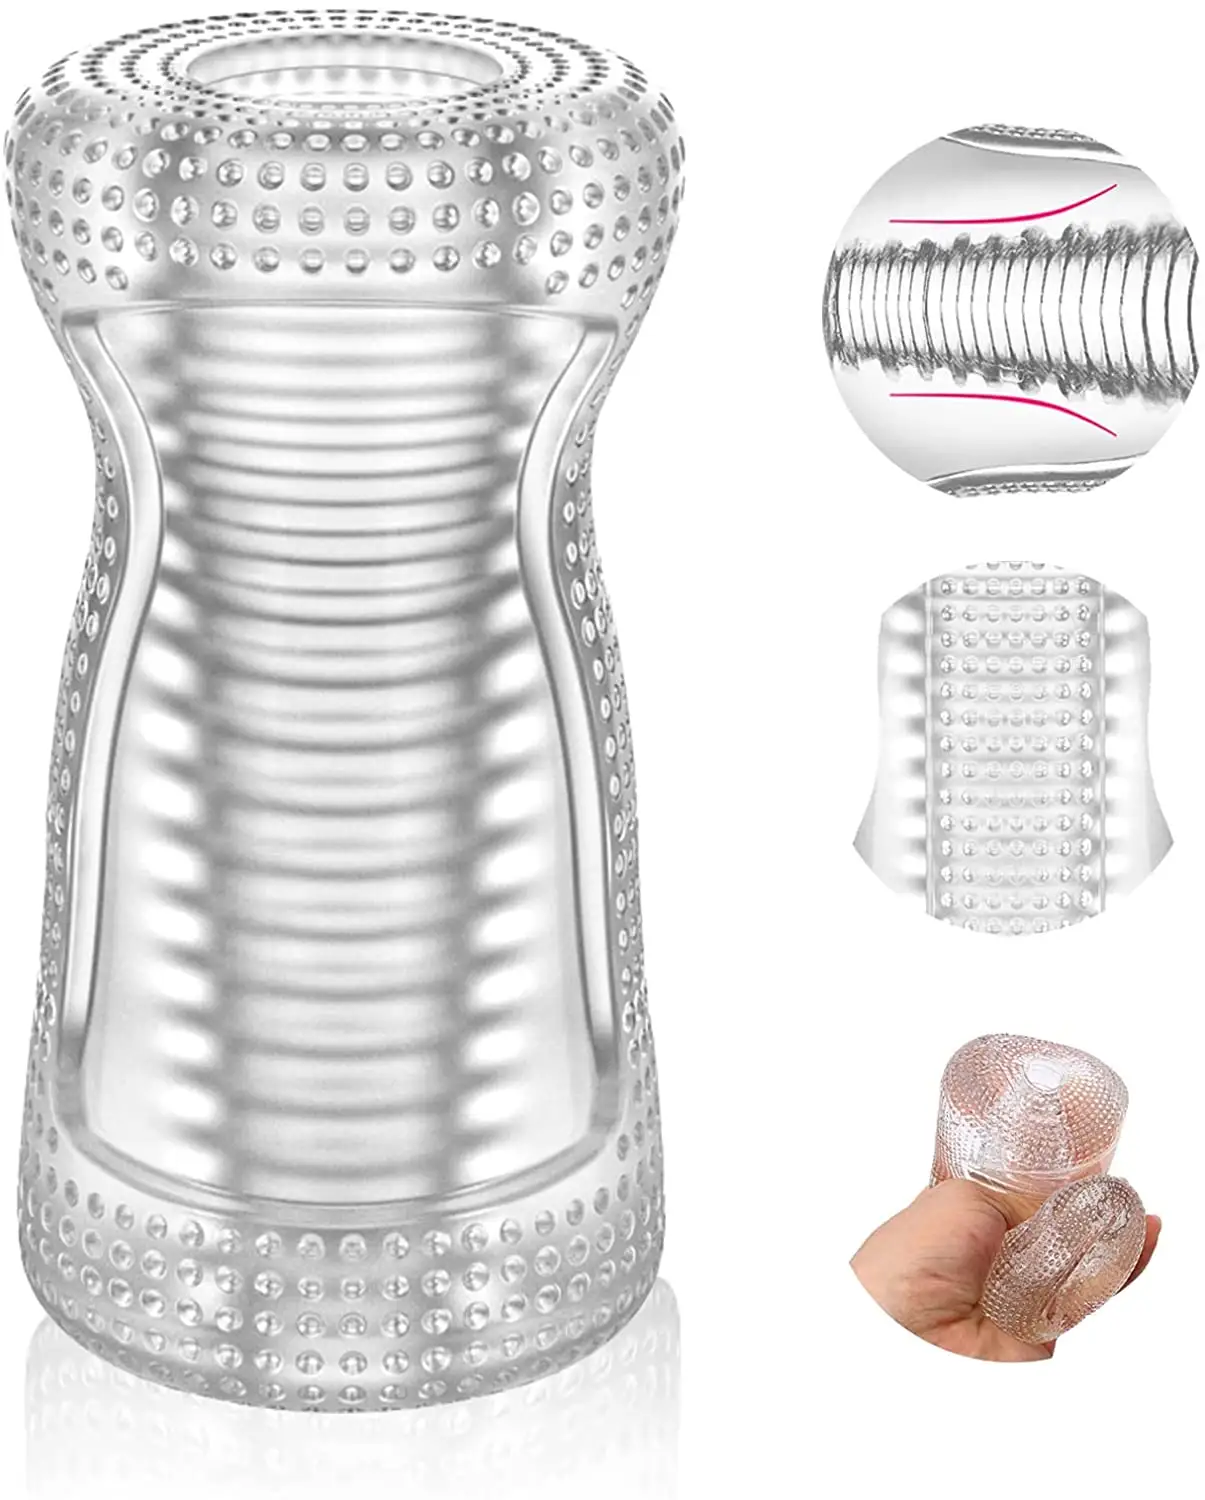 Nova venda quente Masculino Masturbador Sex Toys para Homens Portátil Pocket Cup Stroker com Vagina Texturizado Penis TPE fornecedor por atacado